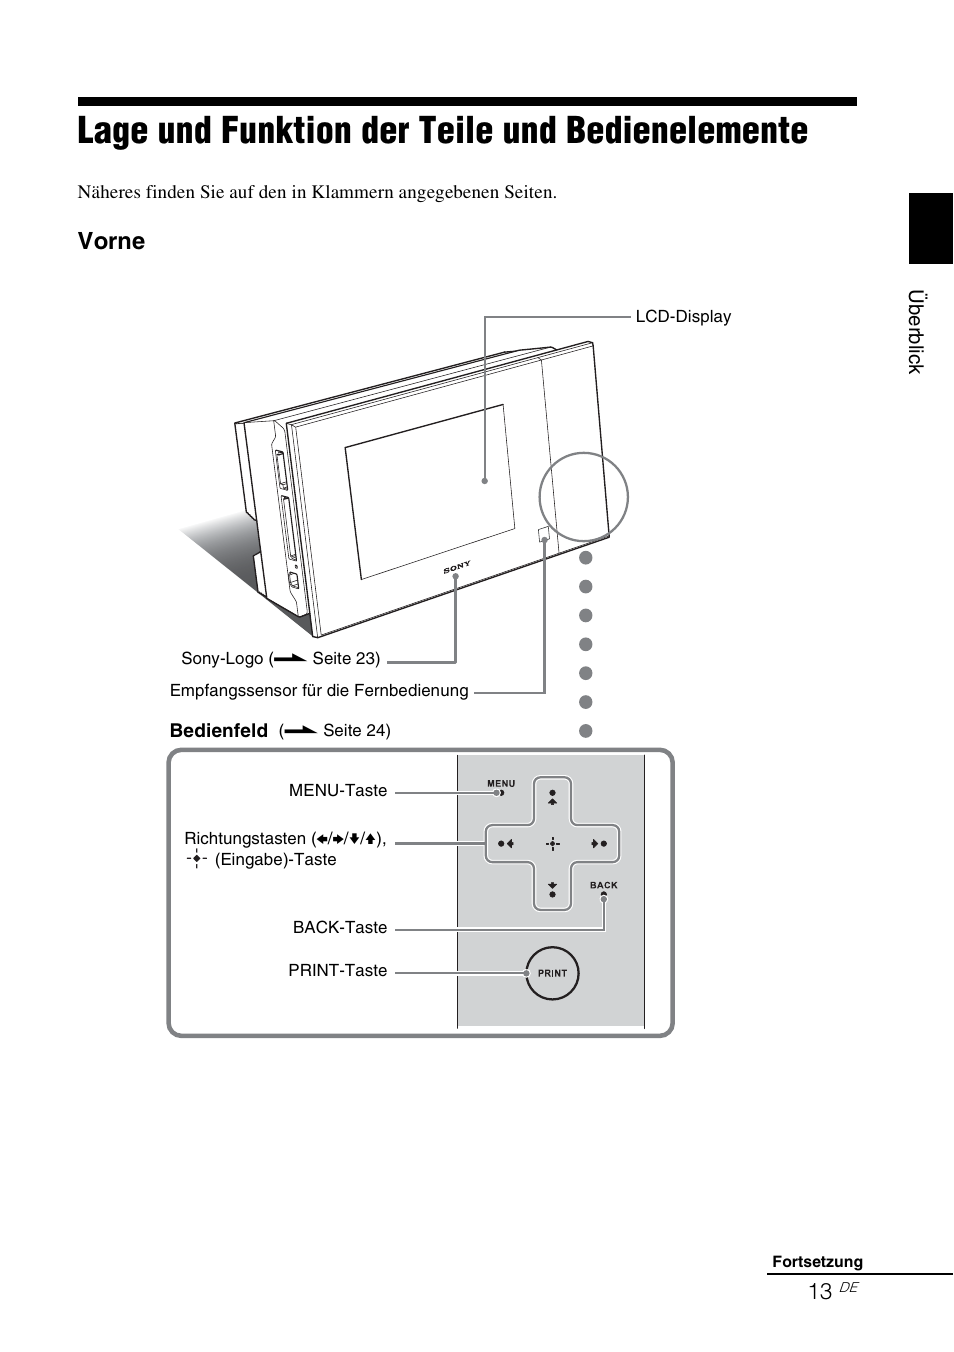 Lage und funktion der teile und bedienelemente, Vorne | Sony DPP-F700 Benutzerhandbuch | Seite 13 / 115